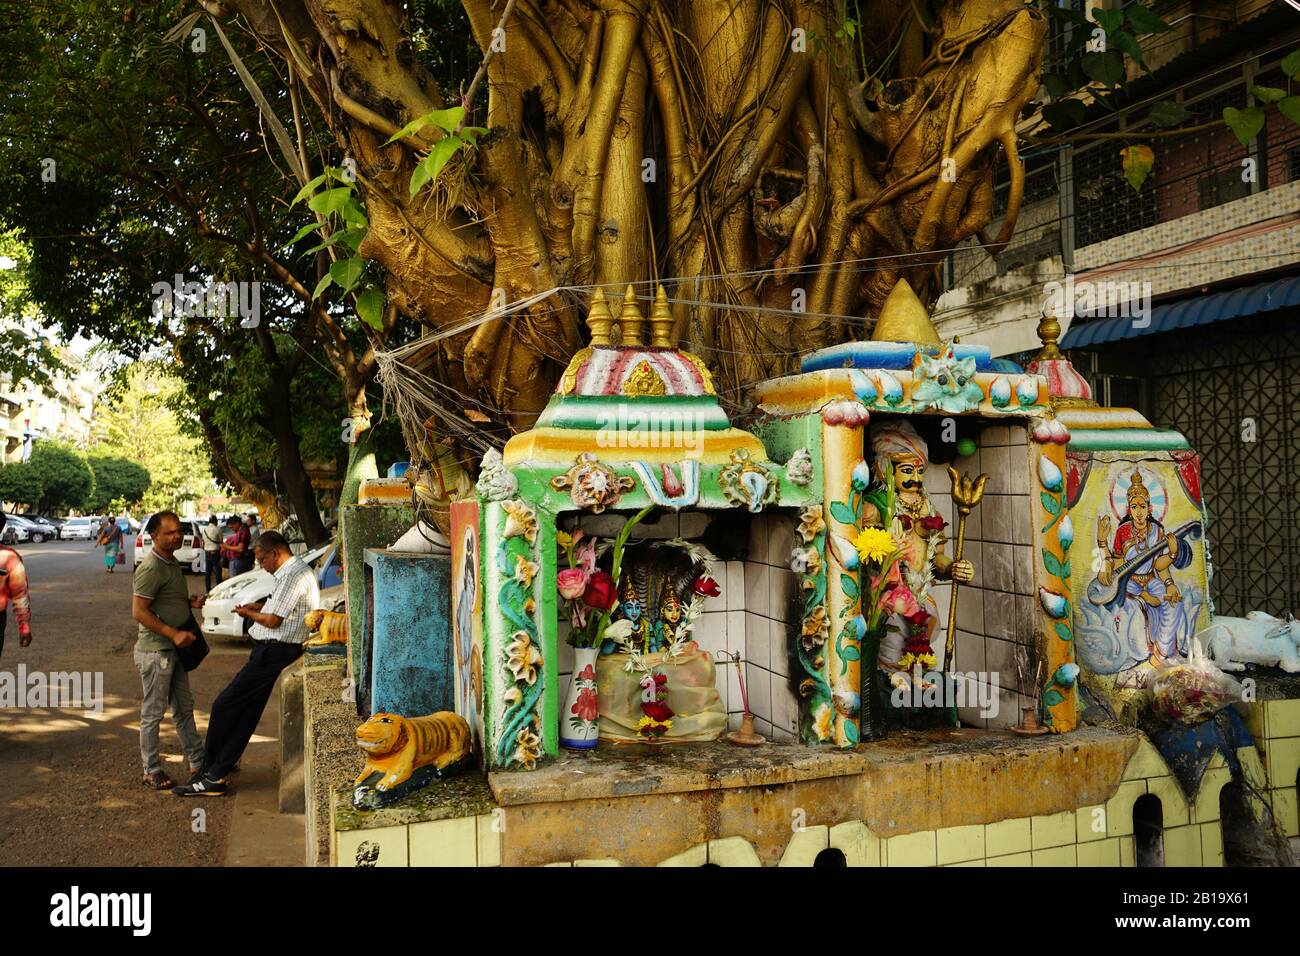 Pappel-Feige (Ficus religiosa) mit Geisterhäusern oder Nat-Schreinen, Yangon, Myanmar Foto Stock